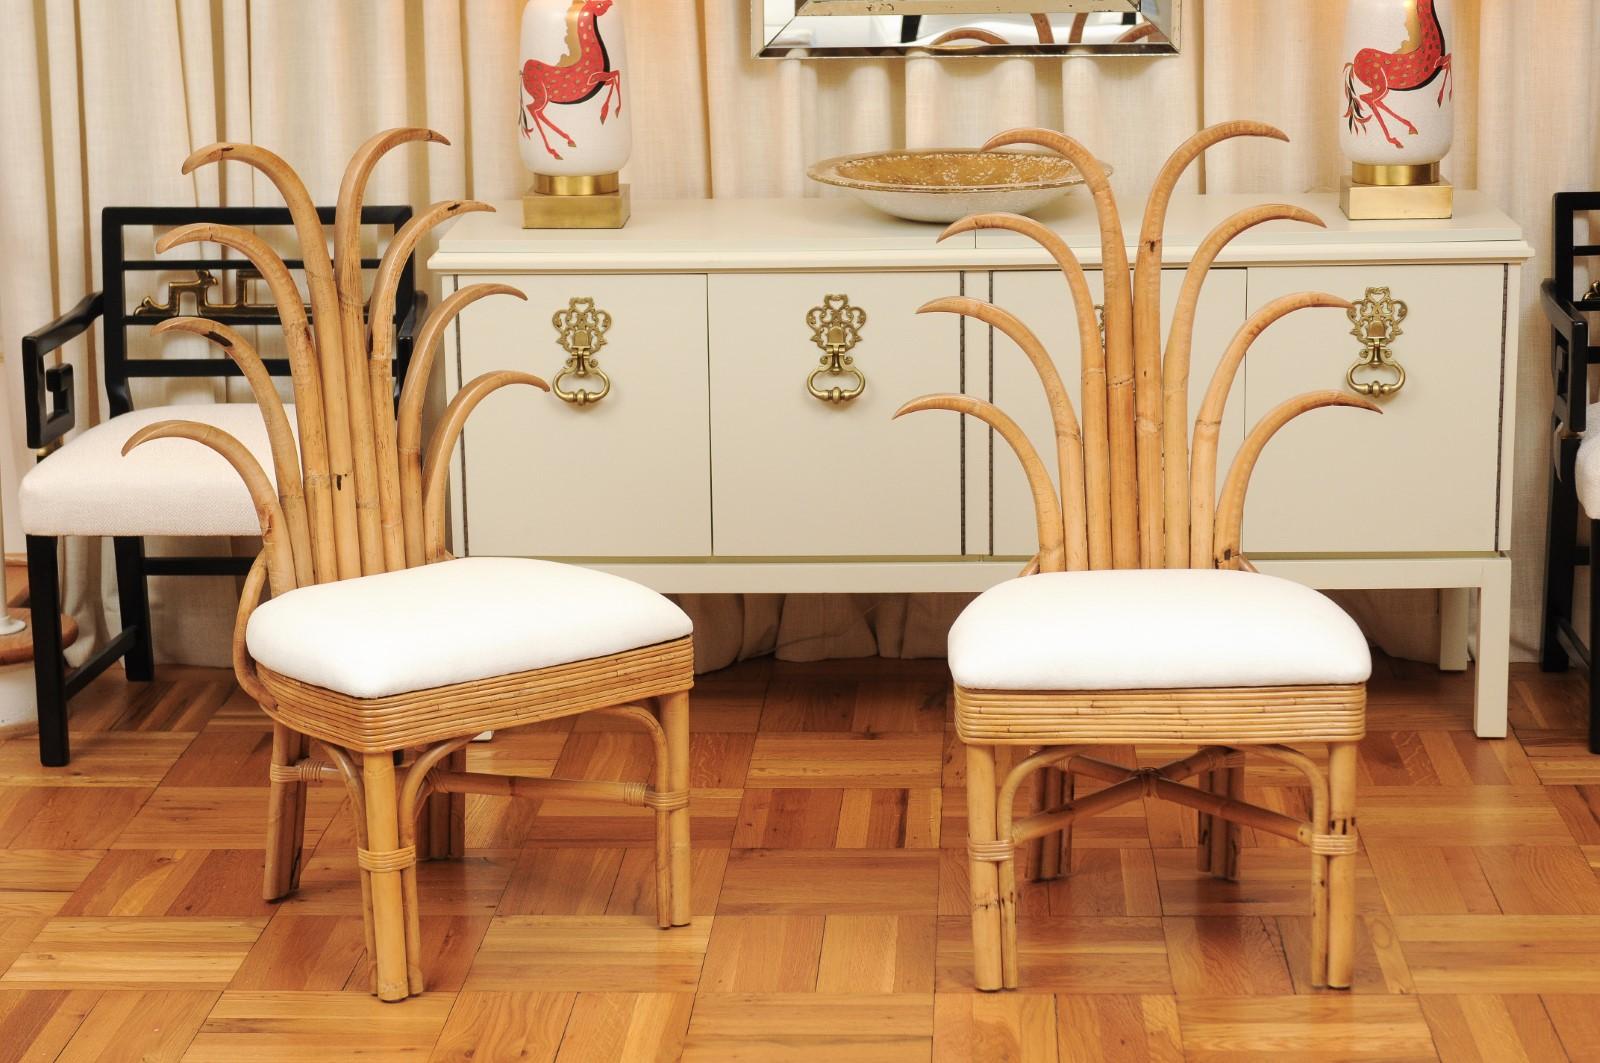 Dieses prächtige Set von Esszimmerstühlen wird so ausgeliefert, wie es professionell fotografiert und in der Auflistung beschrieben ist: sorgfältig restauriert und komplett installationsbereit. Dieses unglaubliche Set ist einzigartig auf dem